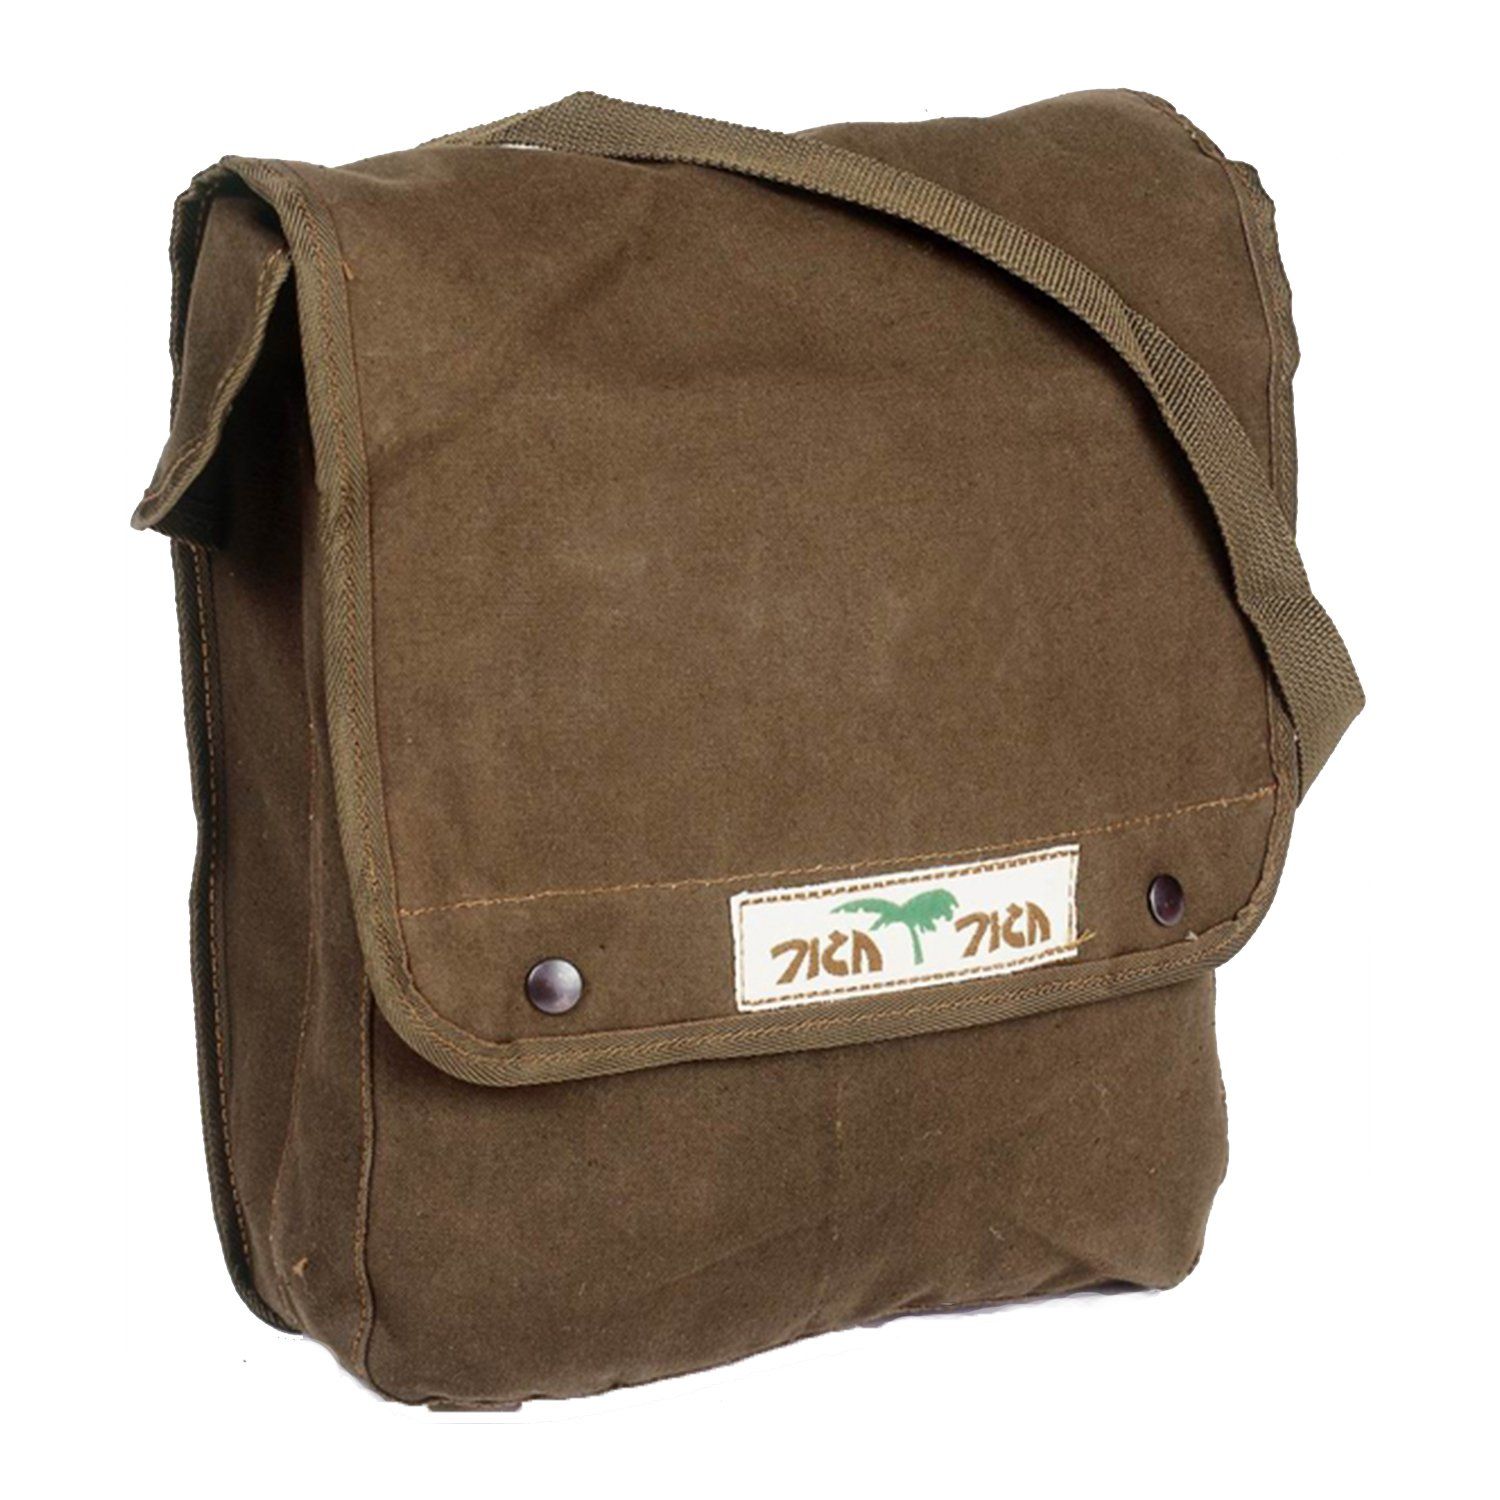 Vintage Messenger Bag, Unisex Military Haversack, Green Heavy Duty Canvas  Shoulder Bag 